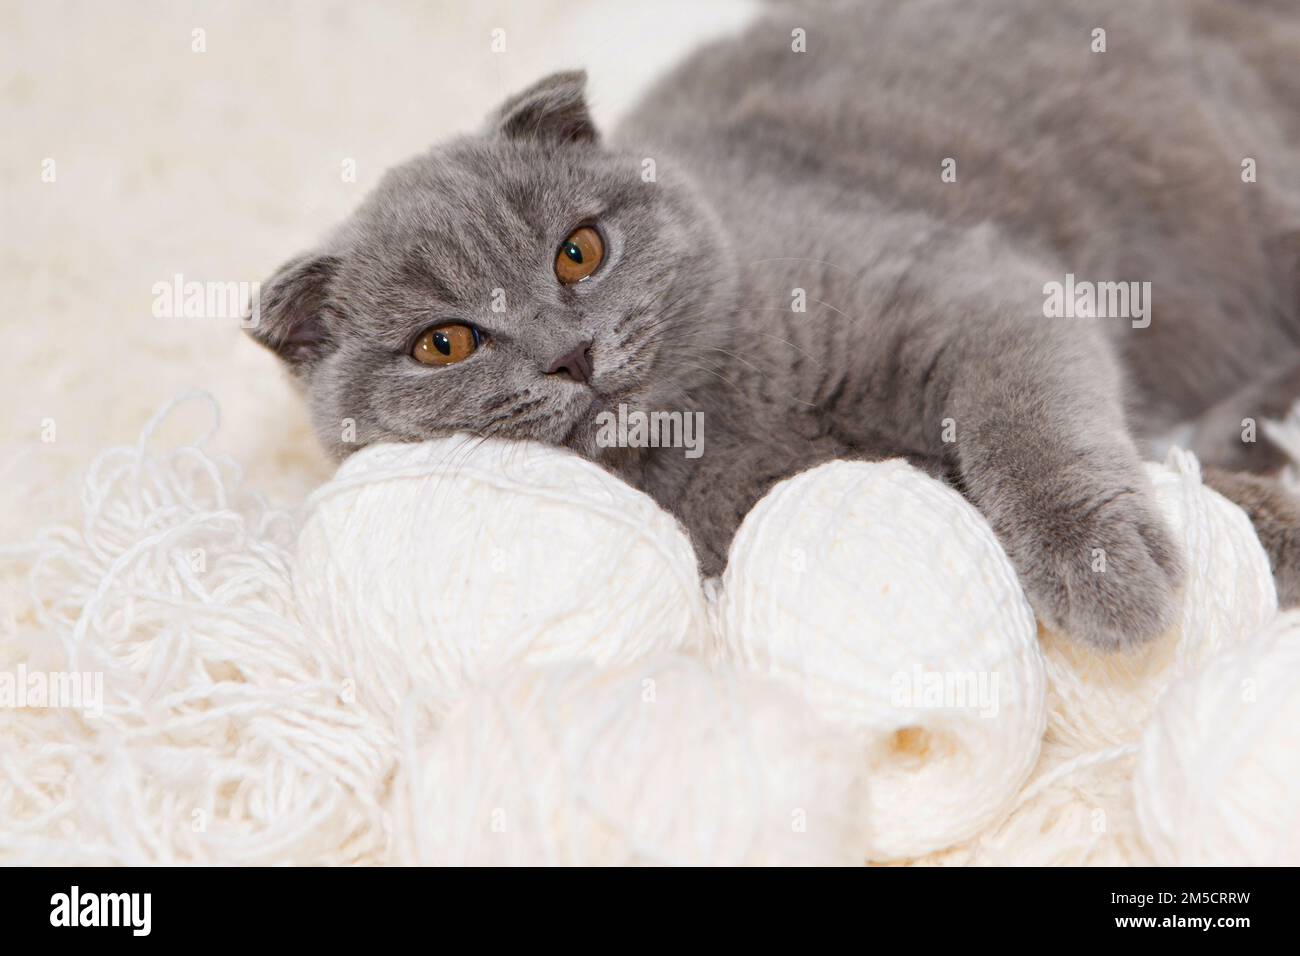 Un gatto grigio gioca con una palla bianca di lana su un soffice tappeto. Gattino felice ama accarezzare la mano della donna. shorthair britannico. Cat per nastri pubblicitari. Simpaticissimo primo piano per gli animali domestici. Foto di alta qualità Foto Stock